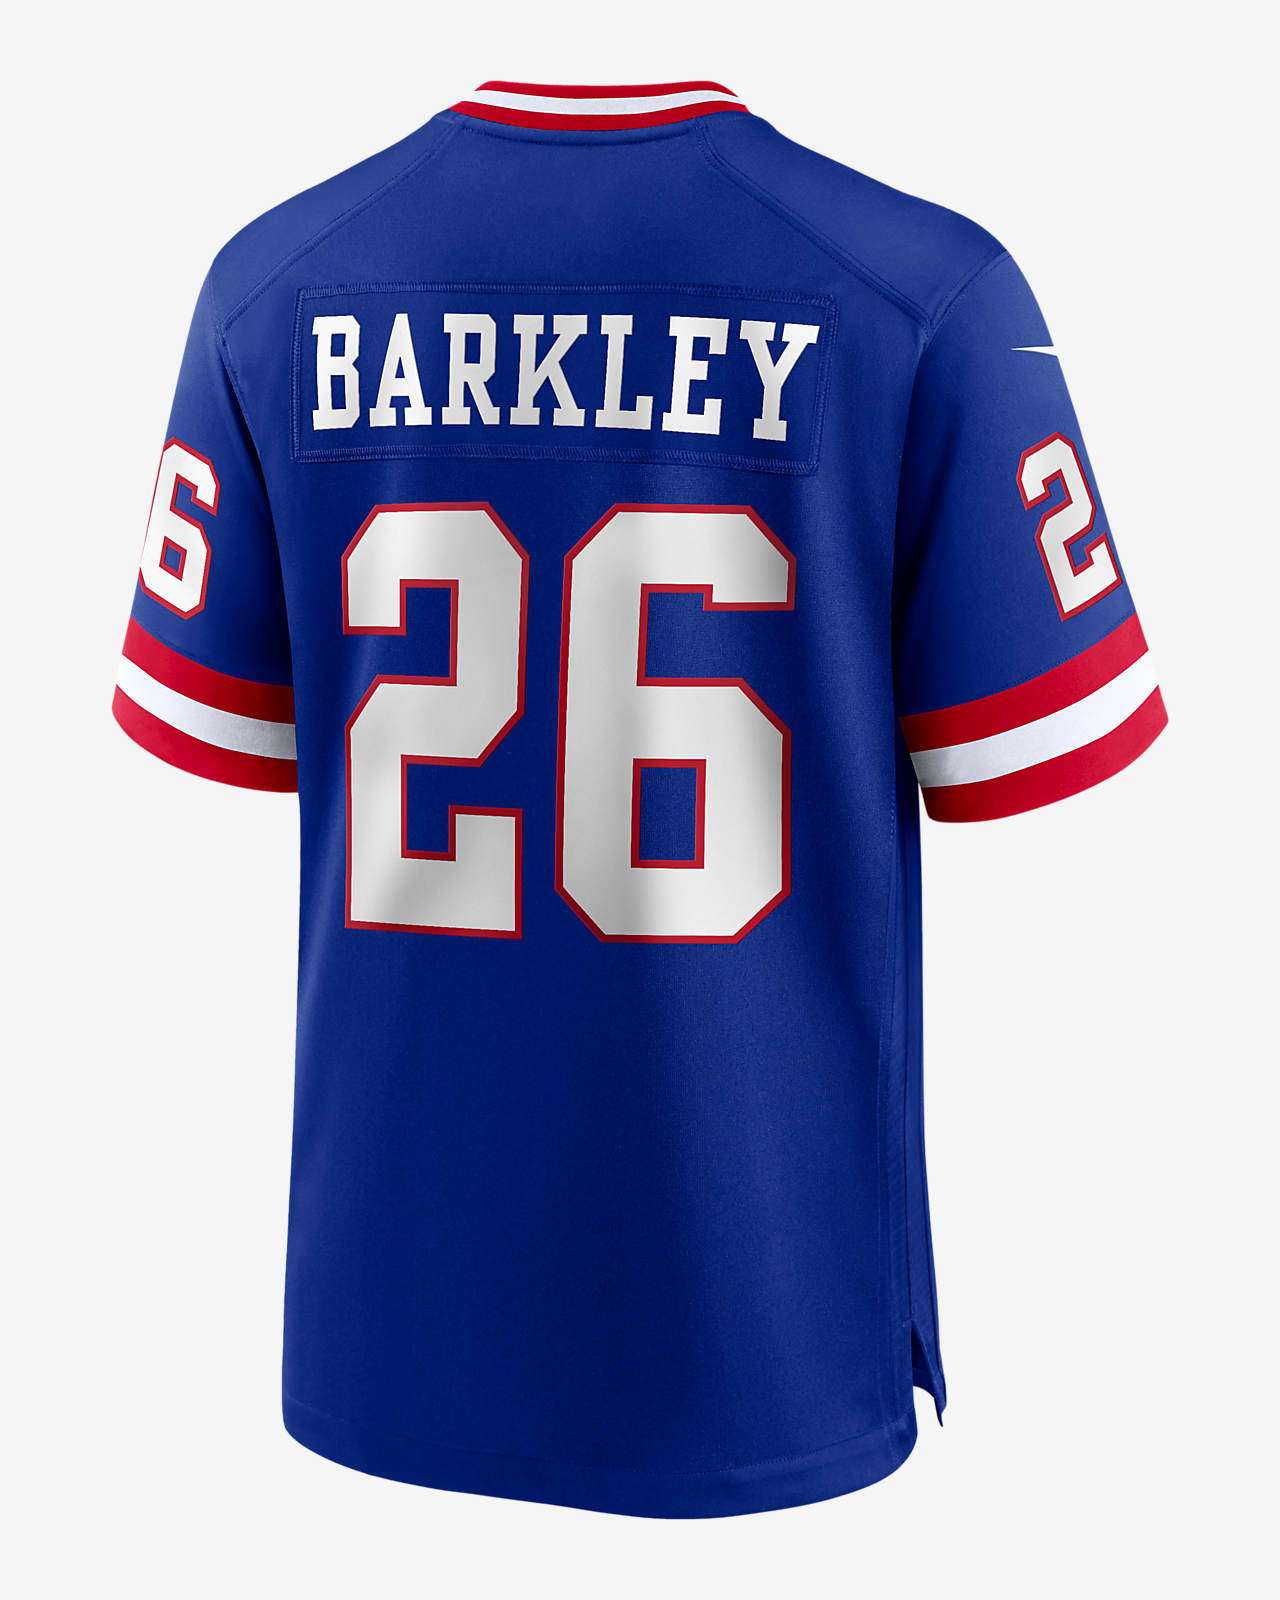 barkley giants shirt